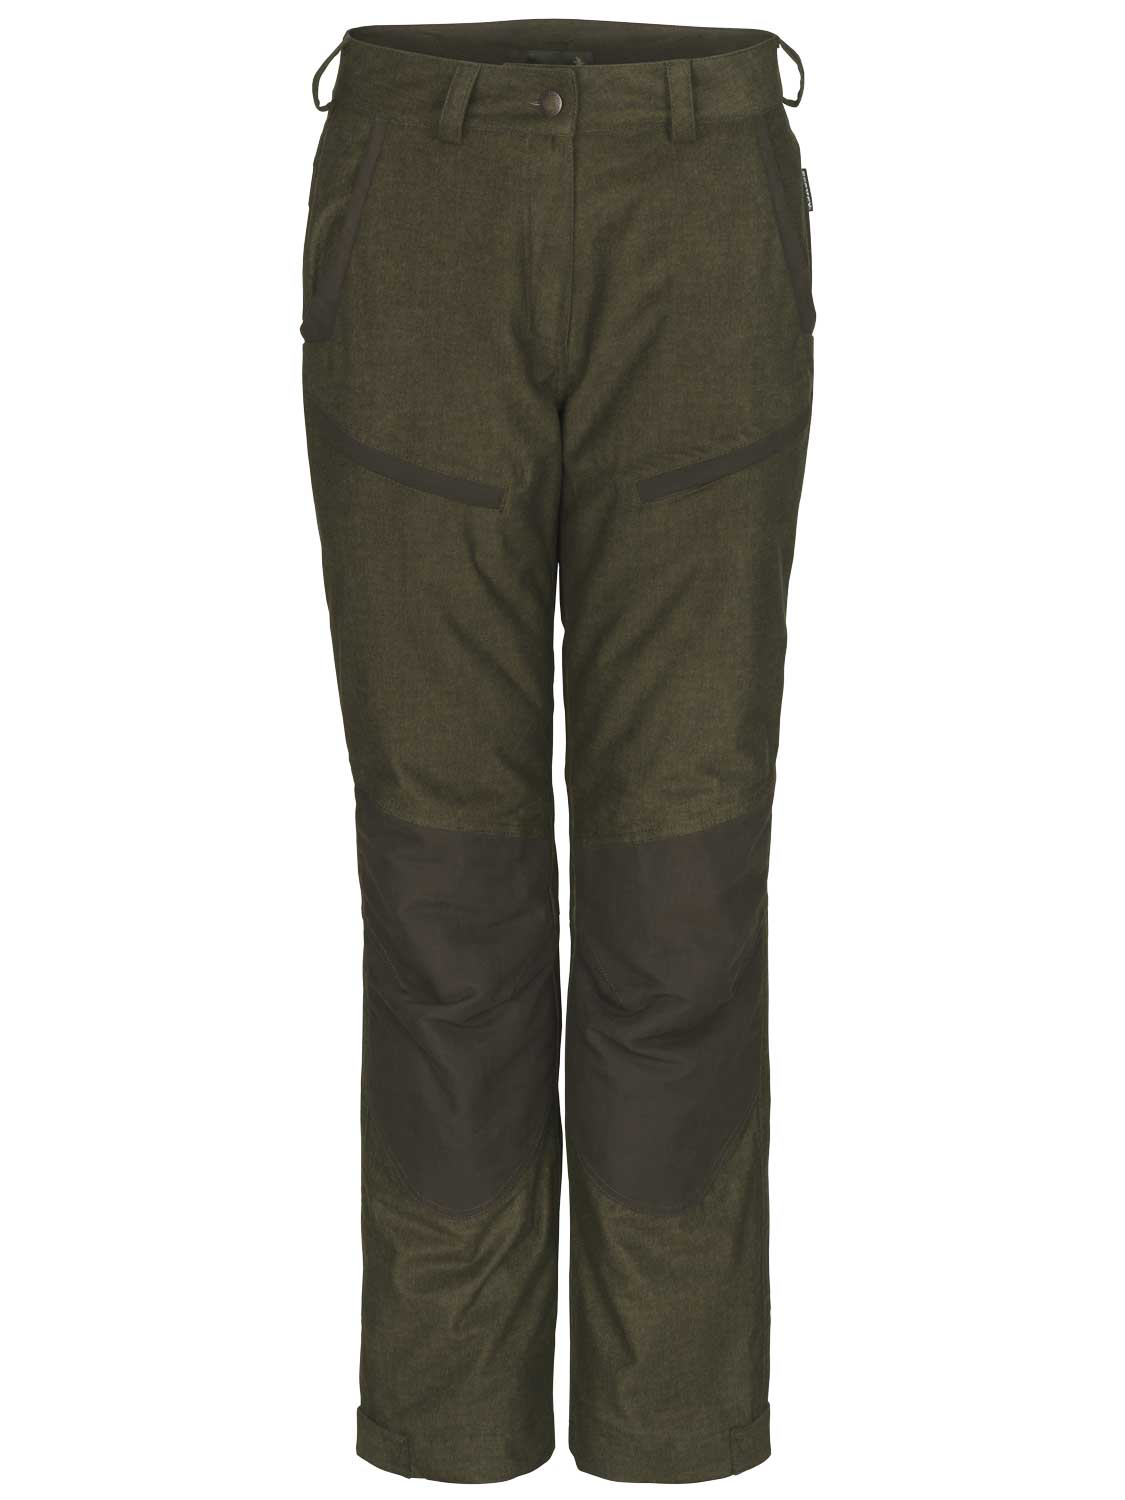 SEELAND Trousers - Ladies North Waterproof - Pine Green